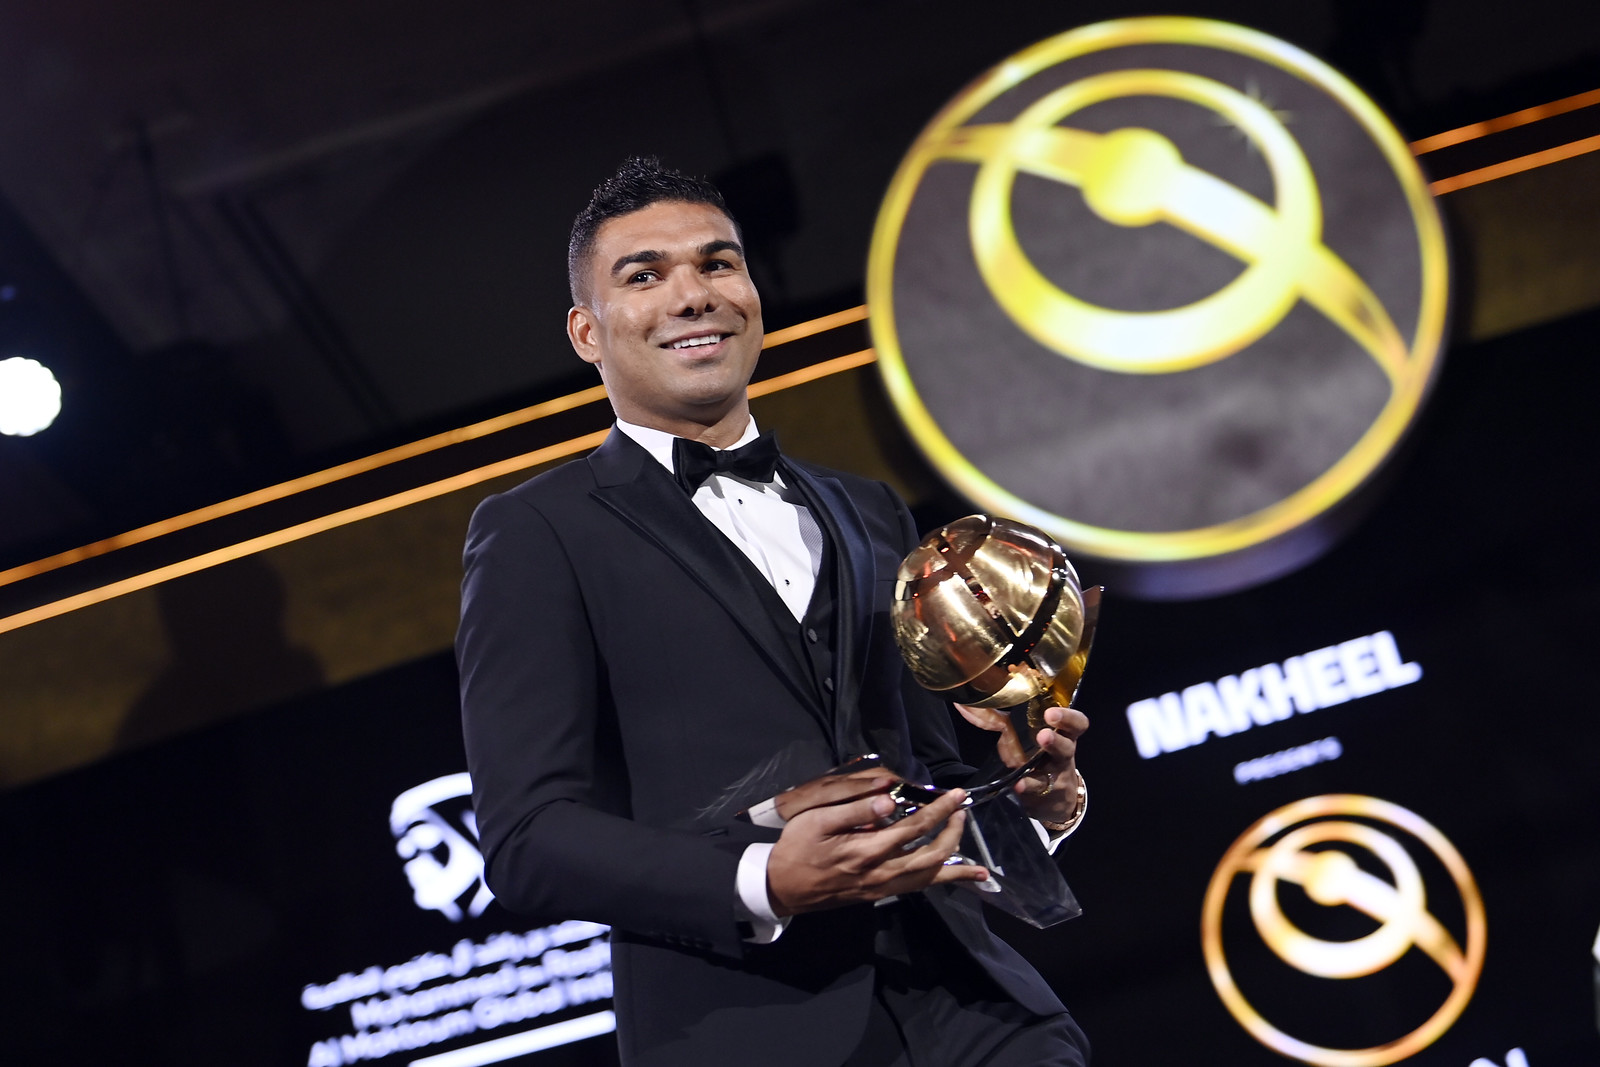 Dubai Globe Soccer Awards 2024.